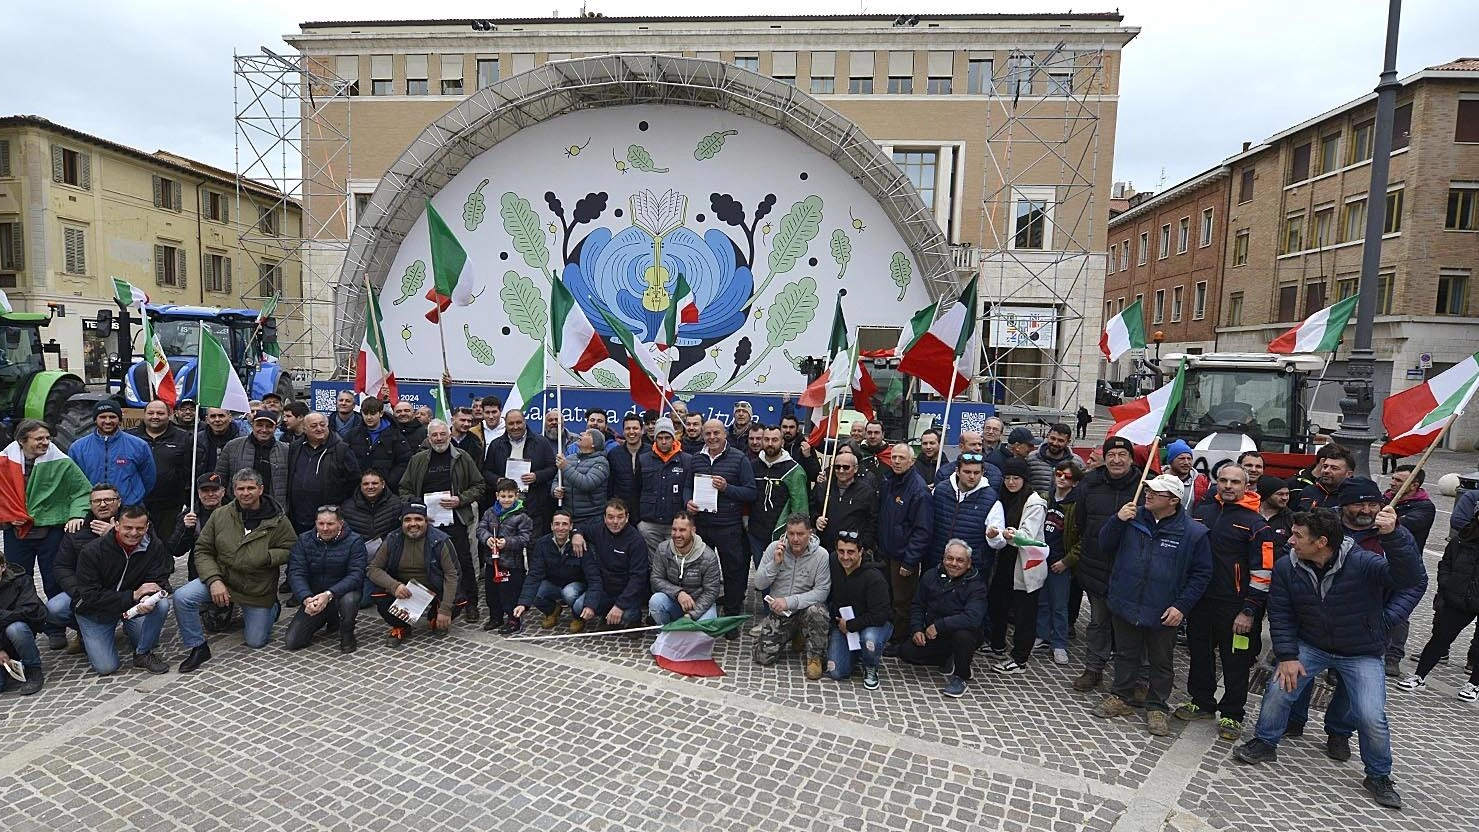 Protesta dei 300, la settimana prossima si spostano a Montecchio: "Non ci fermiamo" "Va a finire che a noi ci fanno smettere, arriva la multinazionale e ti mette il fotovoltaico".